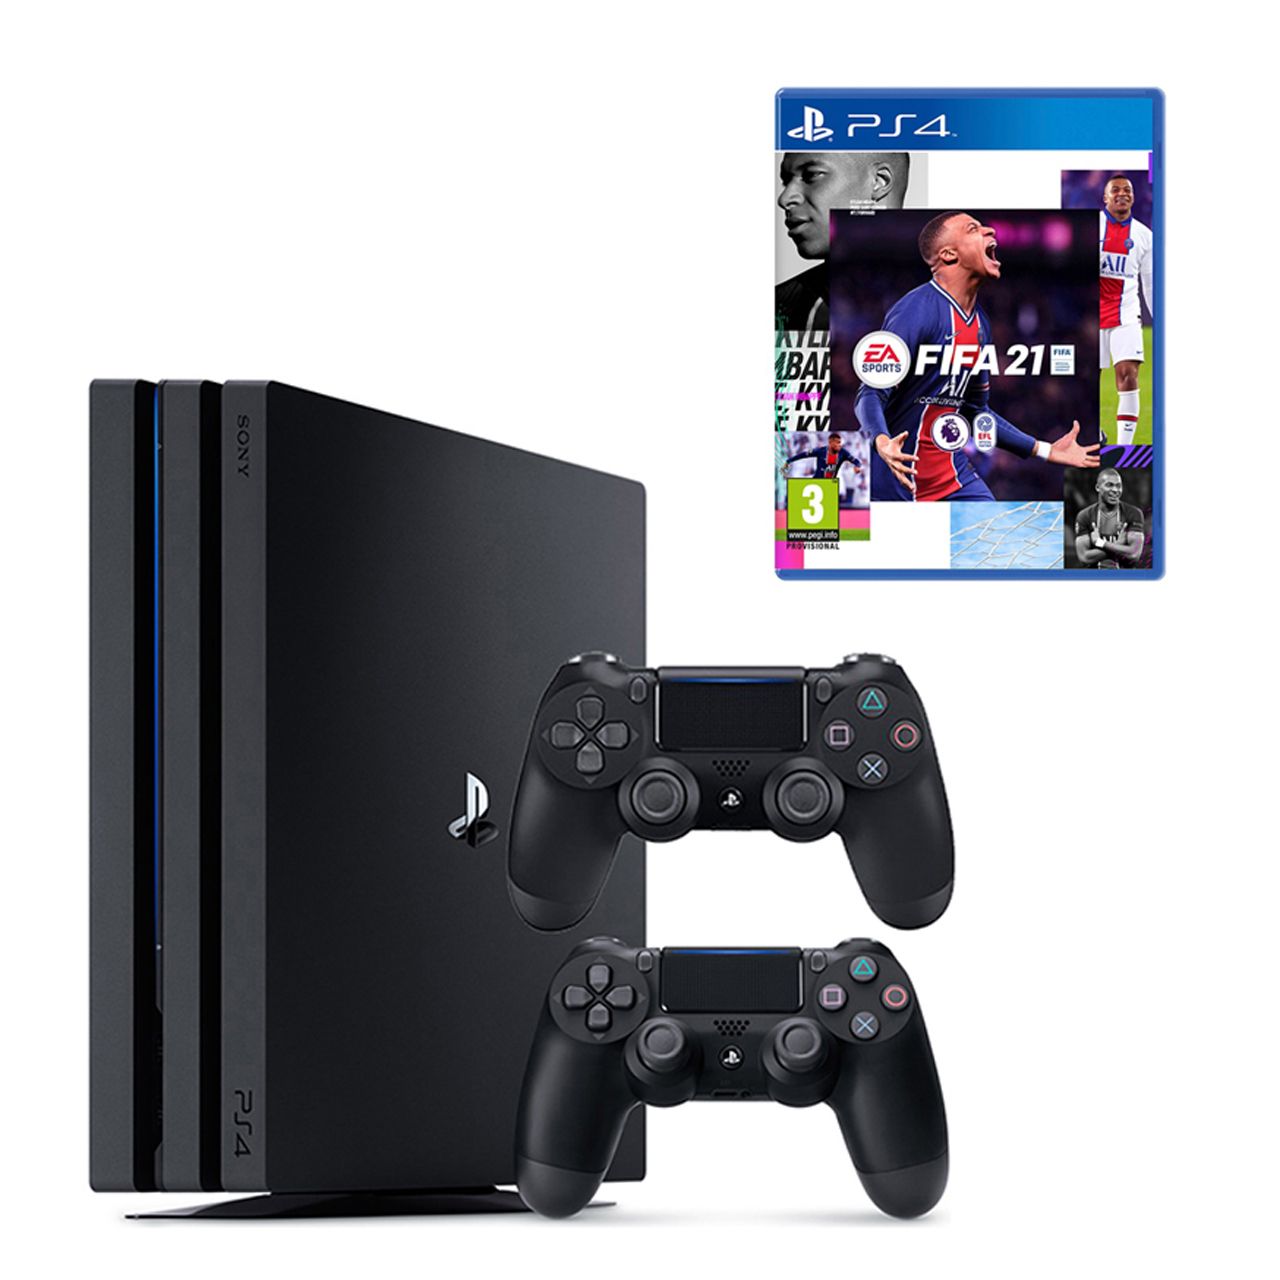 مجموعه کنسول بازی سونی مدل Playstation 4 Pro 2018 کد CUH-7216B Region 2 ظرفیت 1 ترابایت